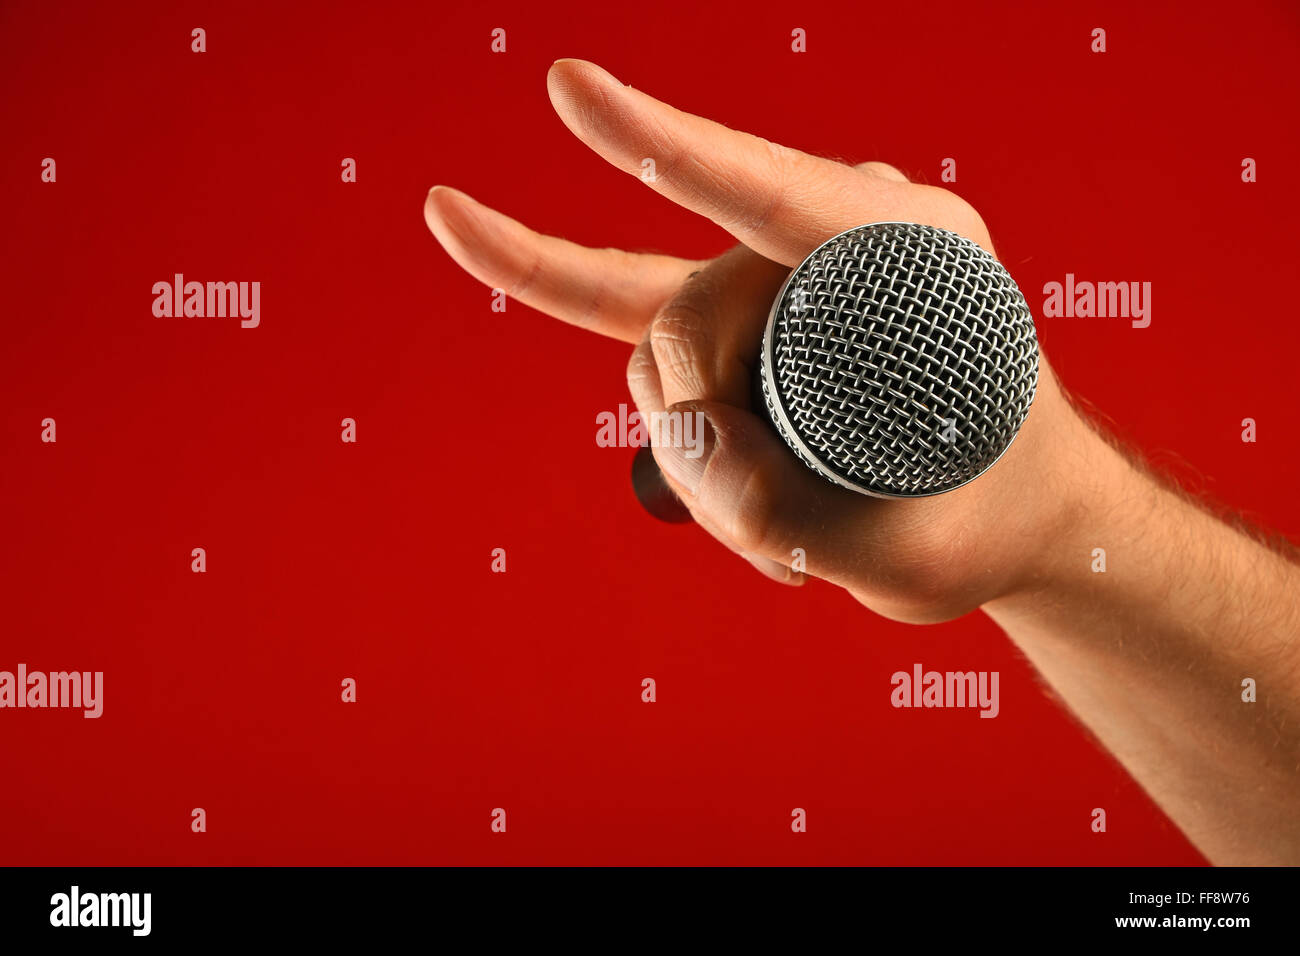 Man hand holding microphone vocal avec des cornes de diable geste rock metal sign sur fond rouge, side view Banque D'Images